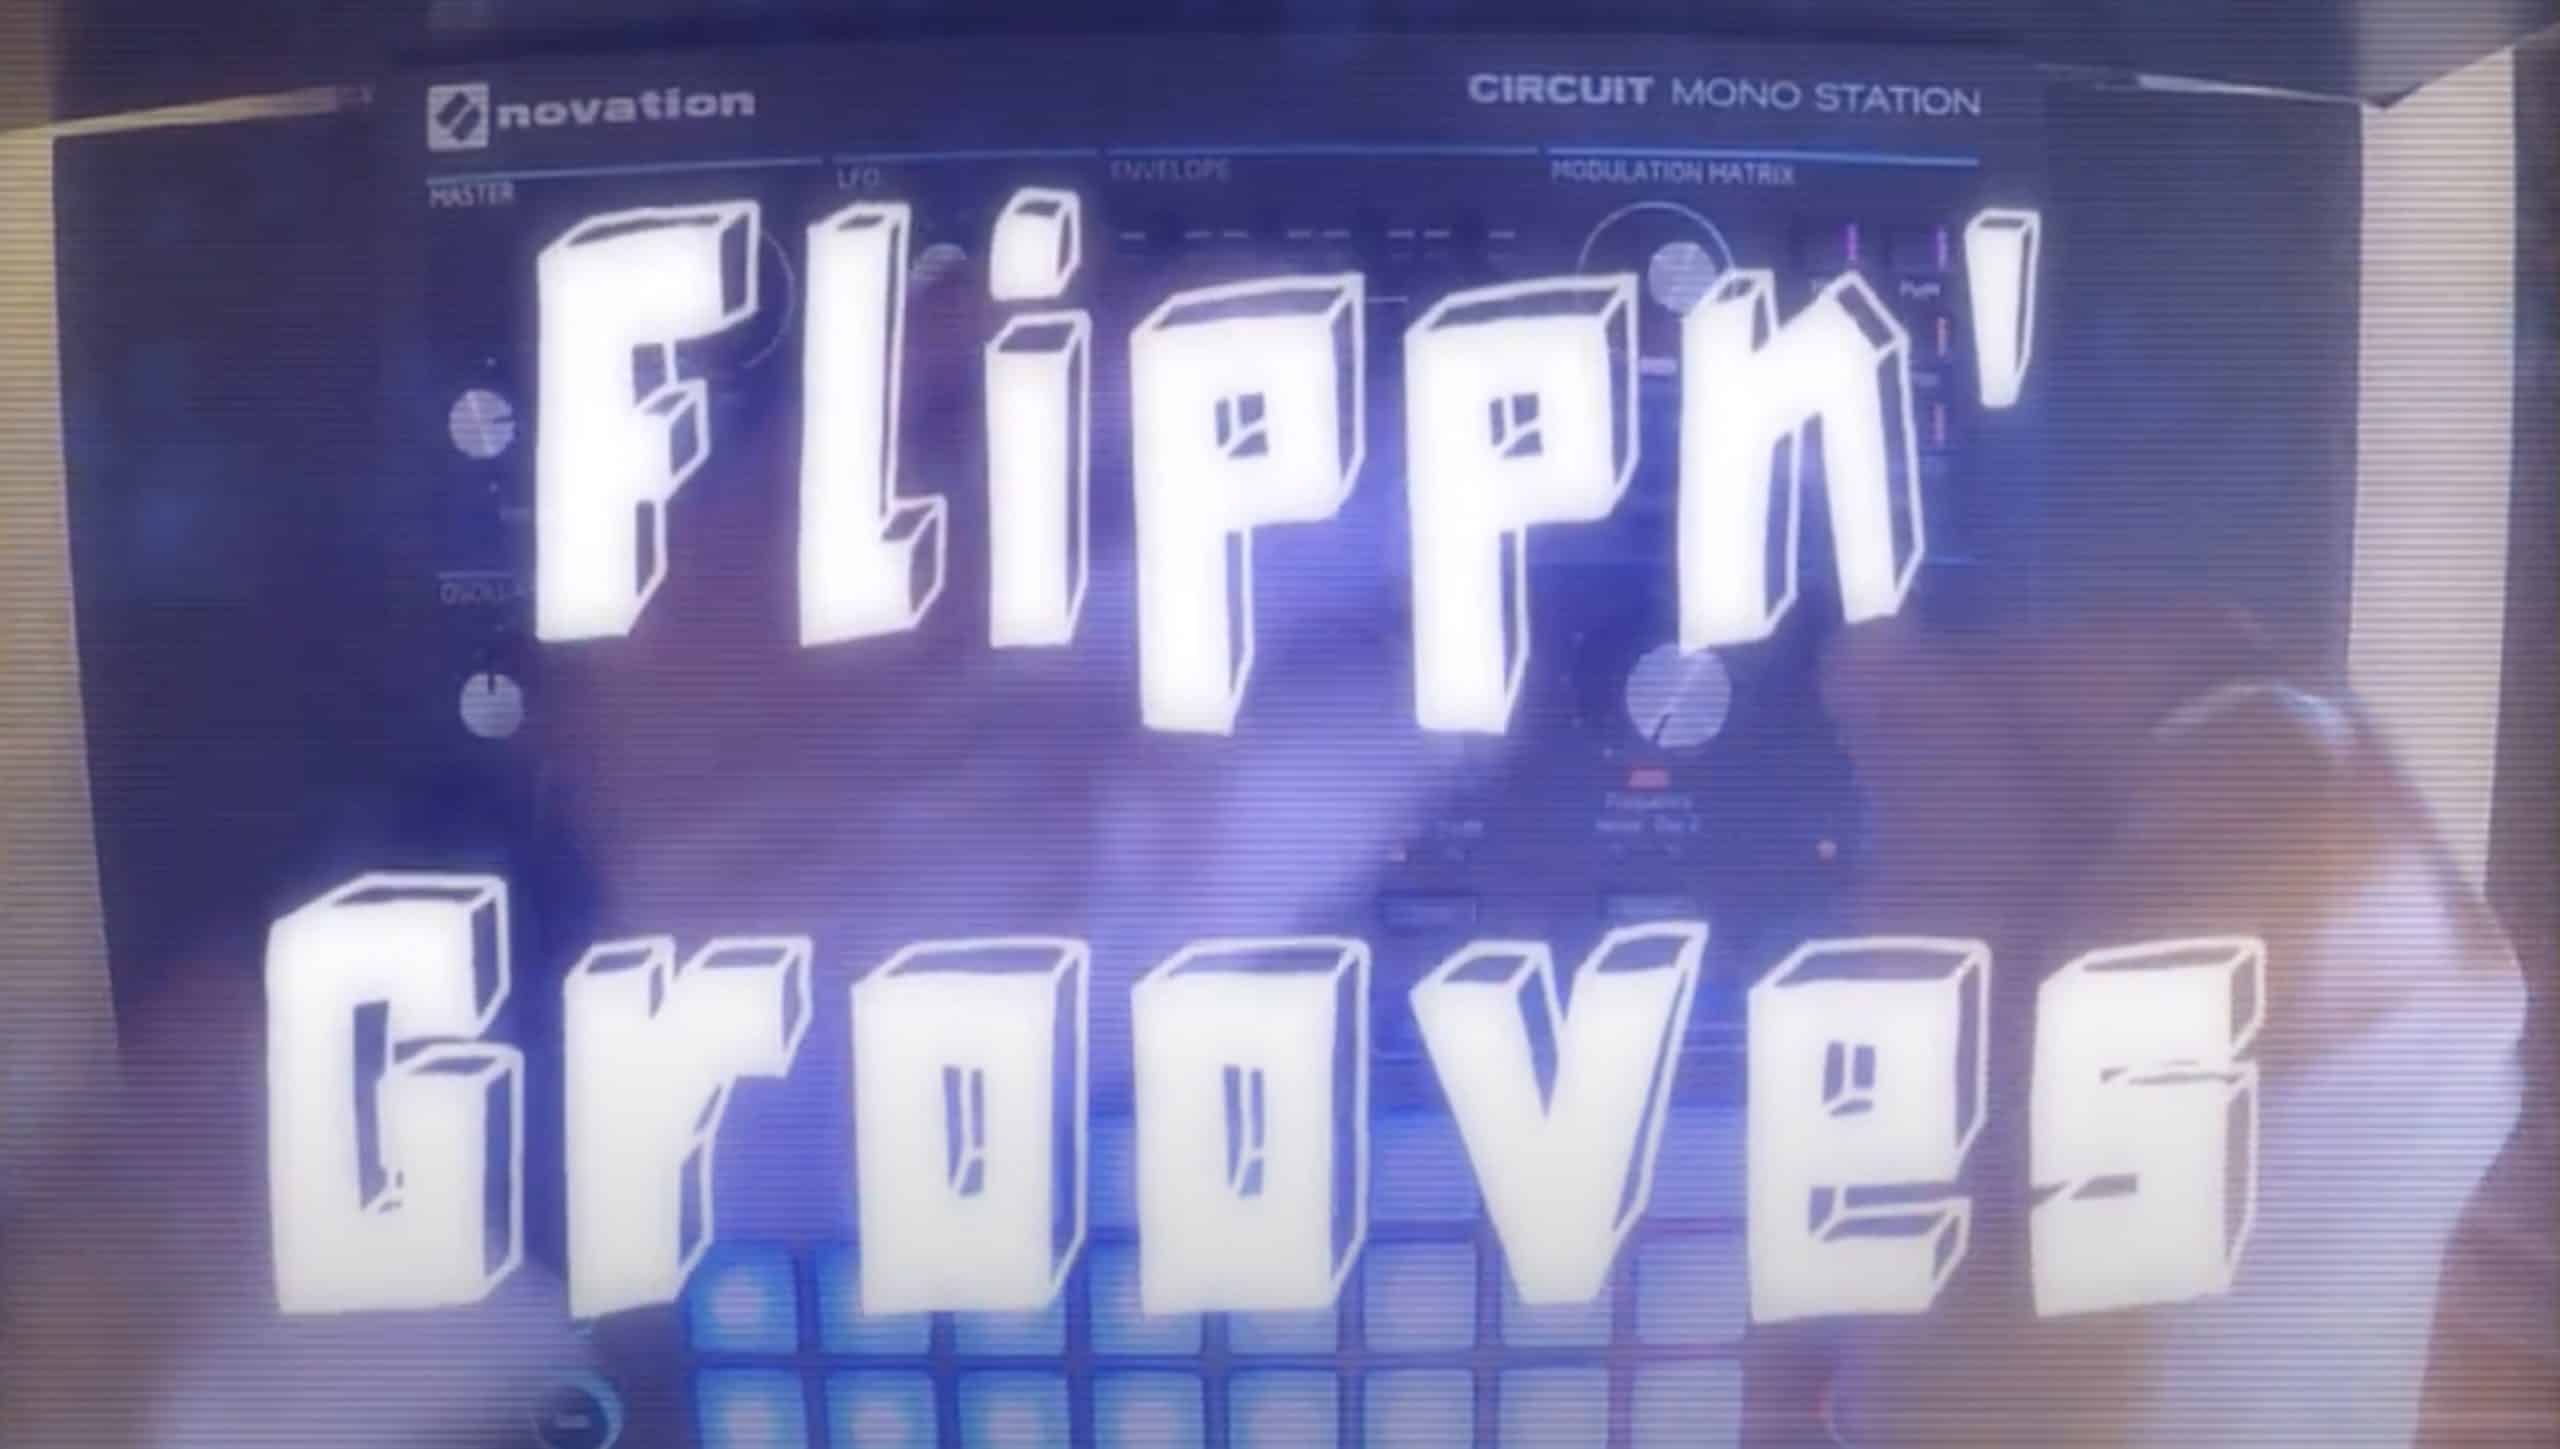 Big City presents Flippn’ Grooves for Novation Monostation